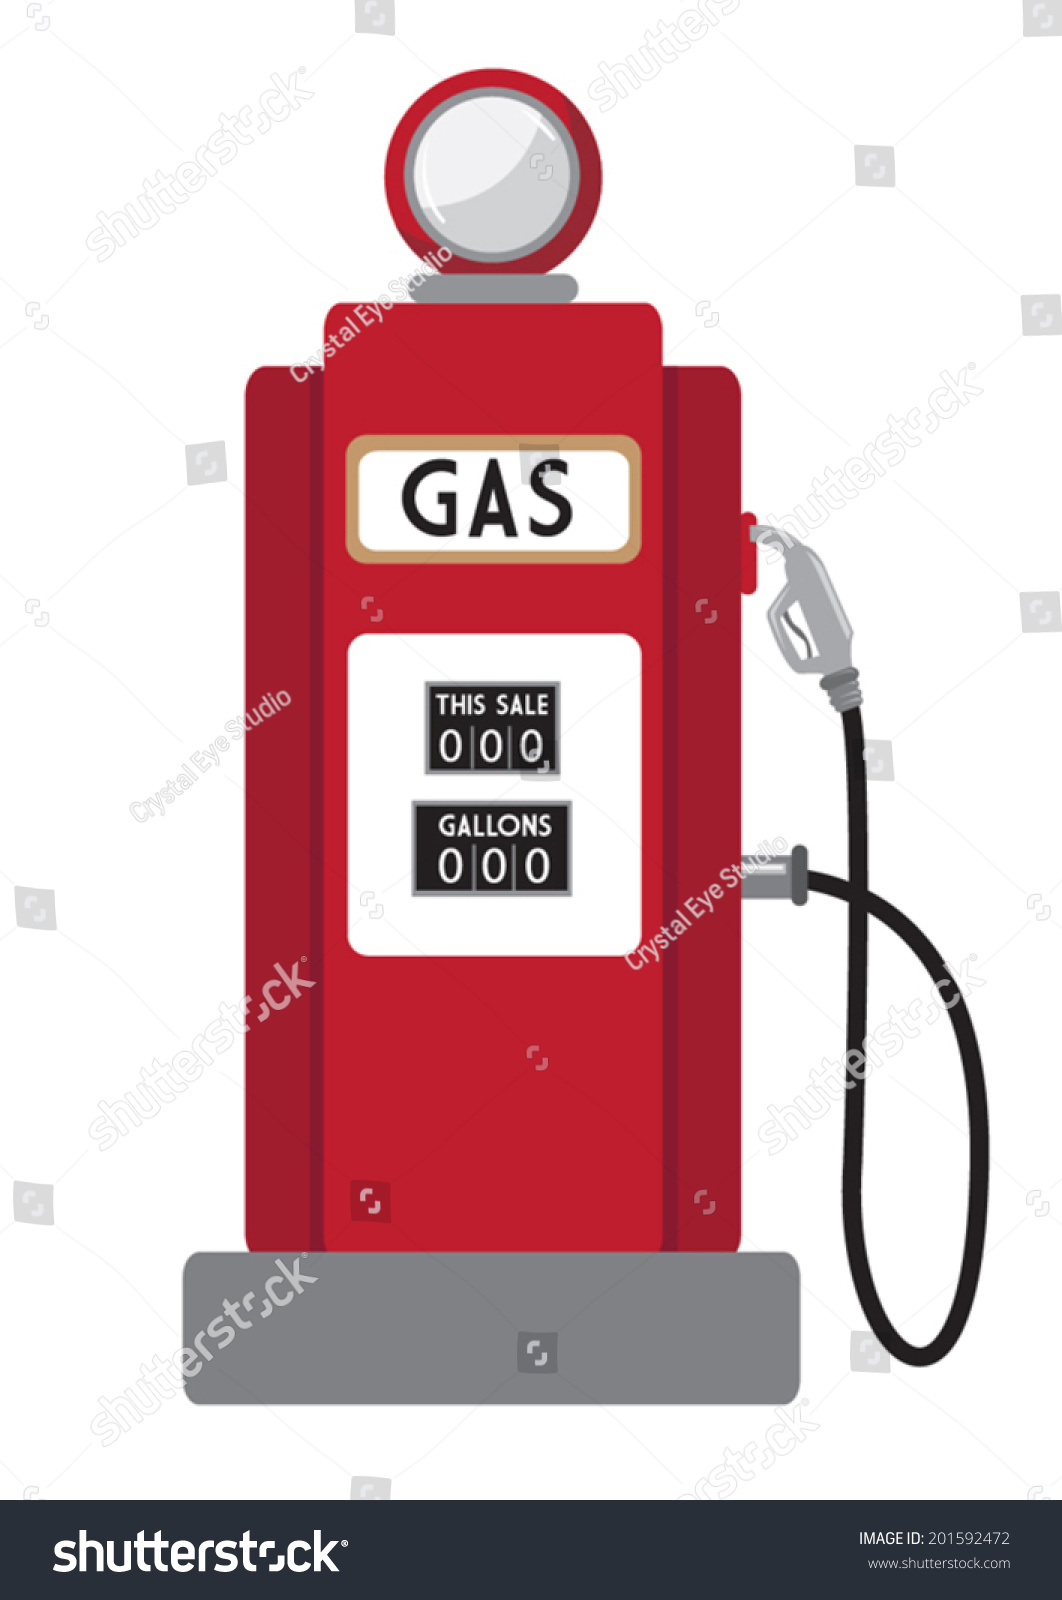 Retro Gas Pump Stock Vector Illustration 201592472 : Shutterstock